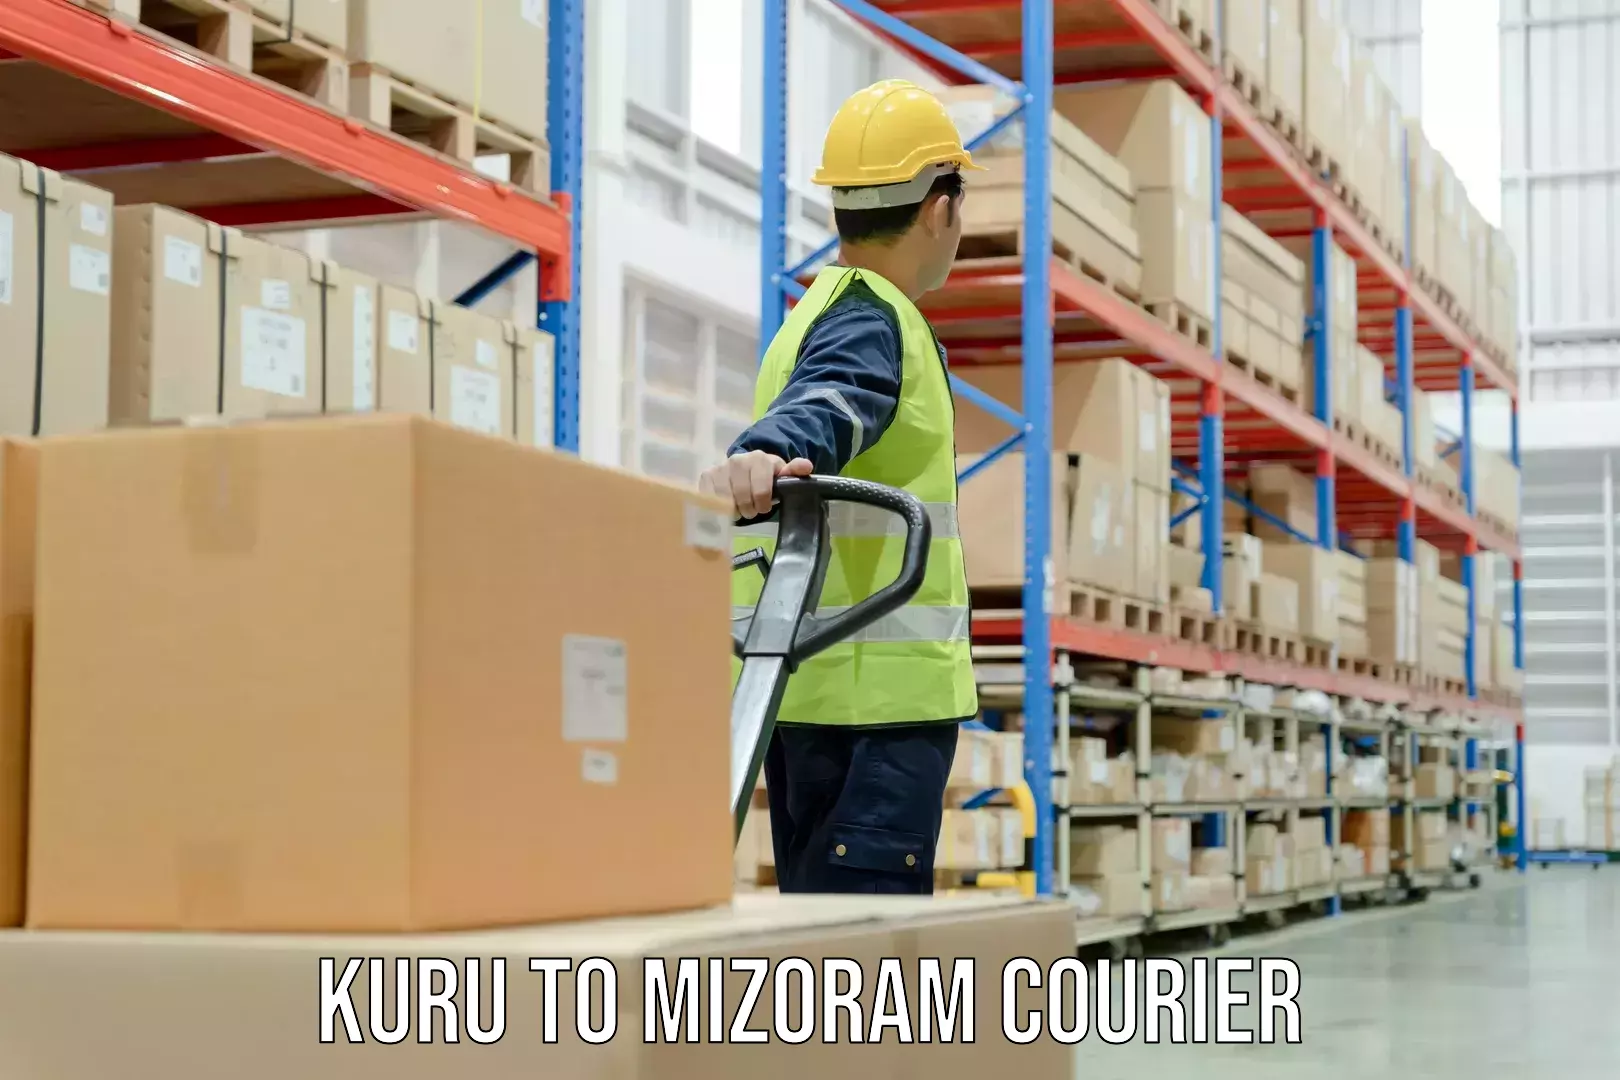 Courier app Kuru to Mizoram